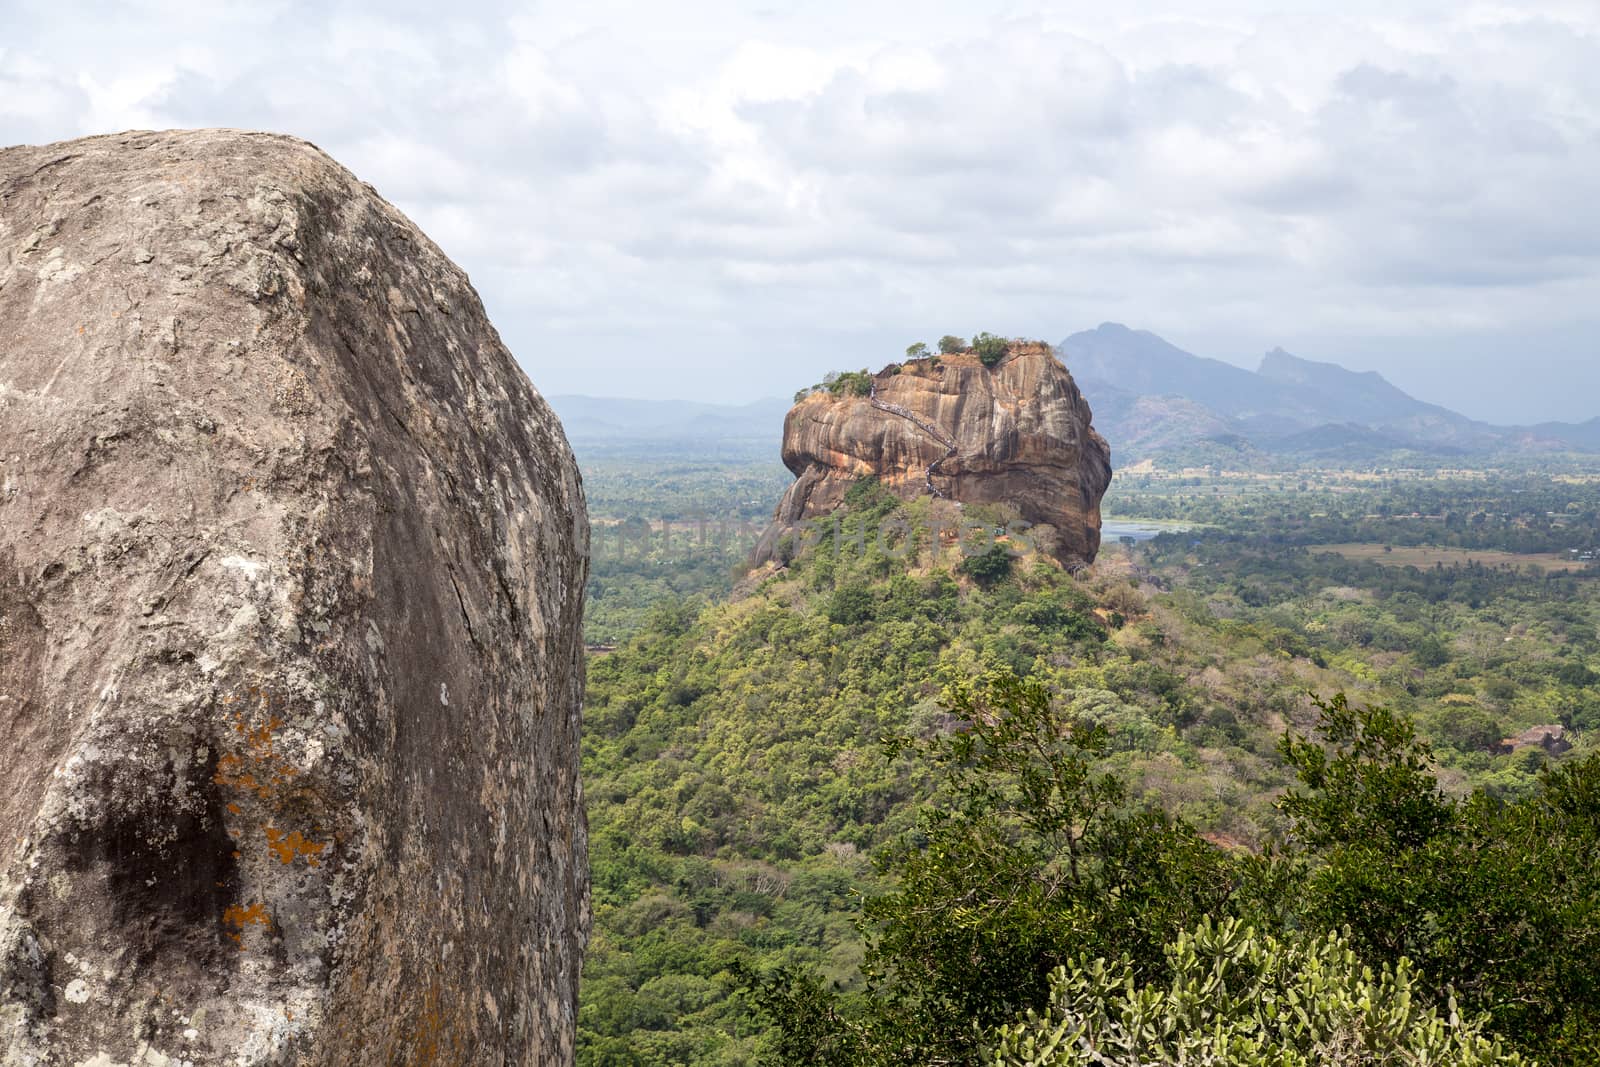 Lion Rock in Sigiriya, Sri Lanka by oliverfoerstner